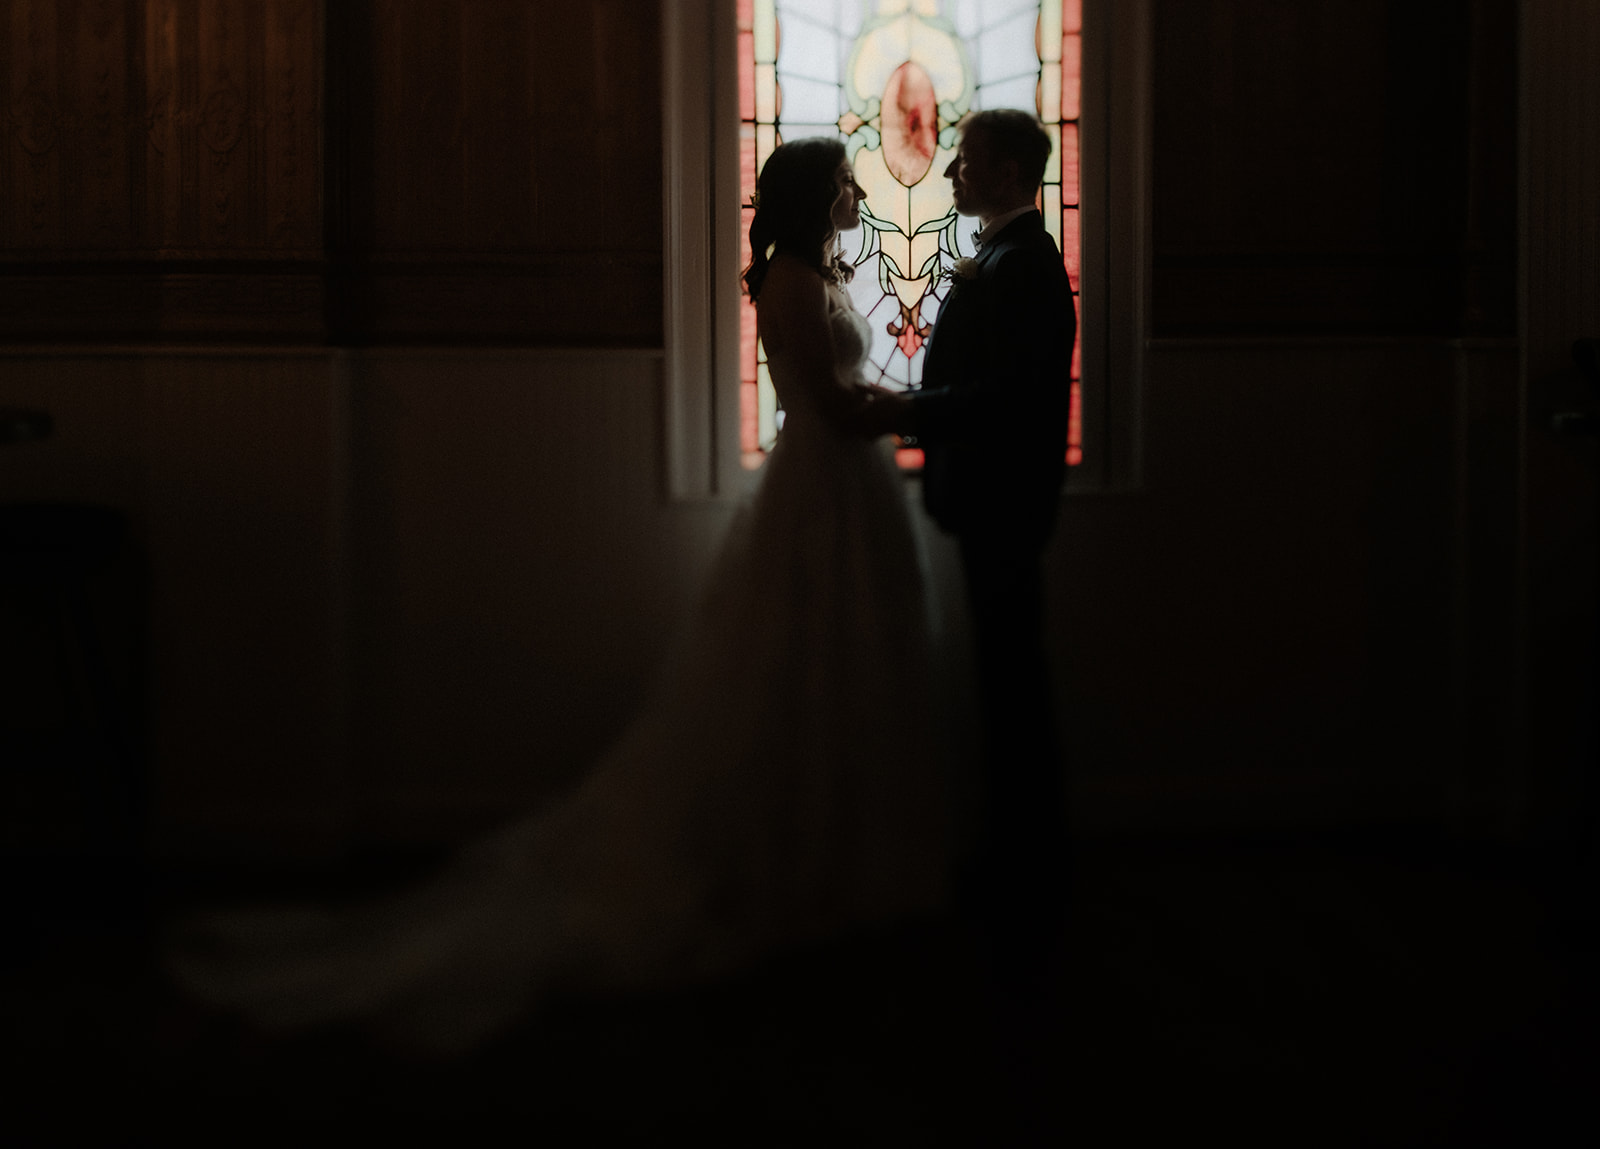 stained glass window wedding photo